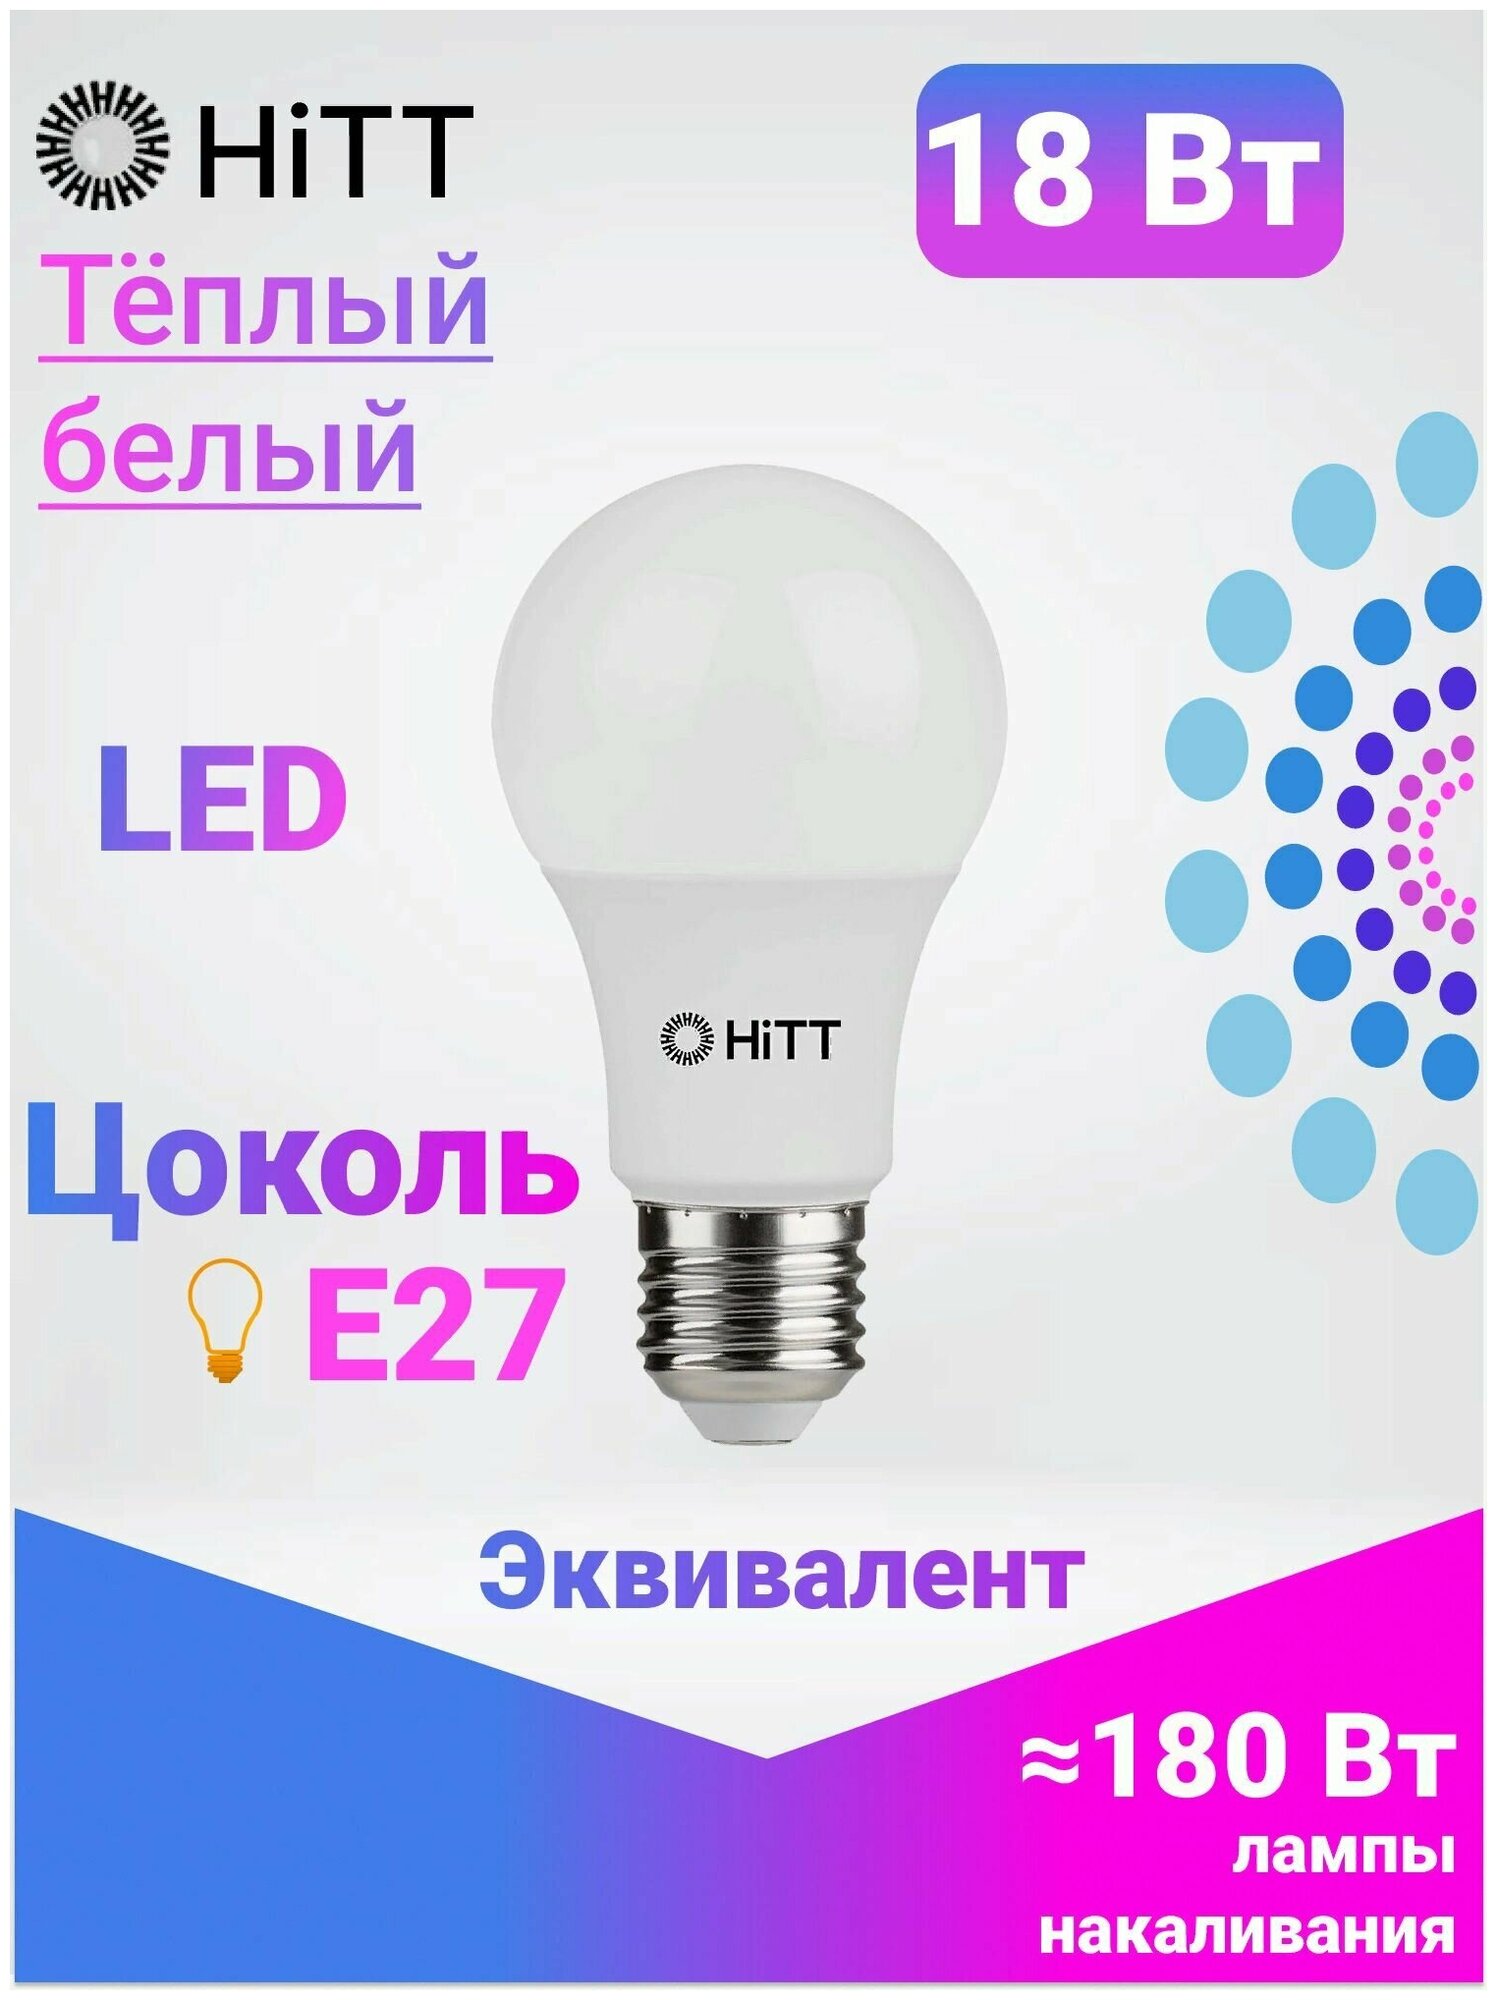 Энергоэффективная светодиодная лампа HiTT 18Вт E27 3000к